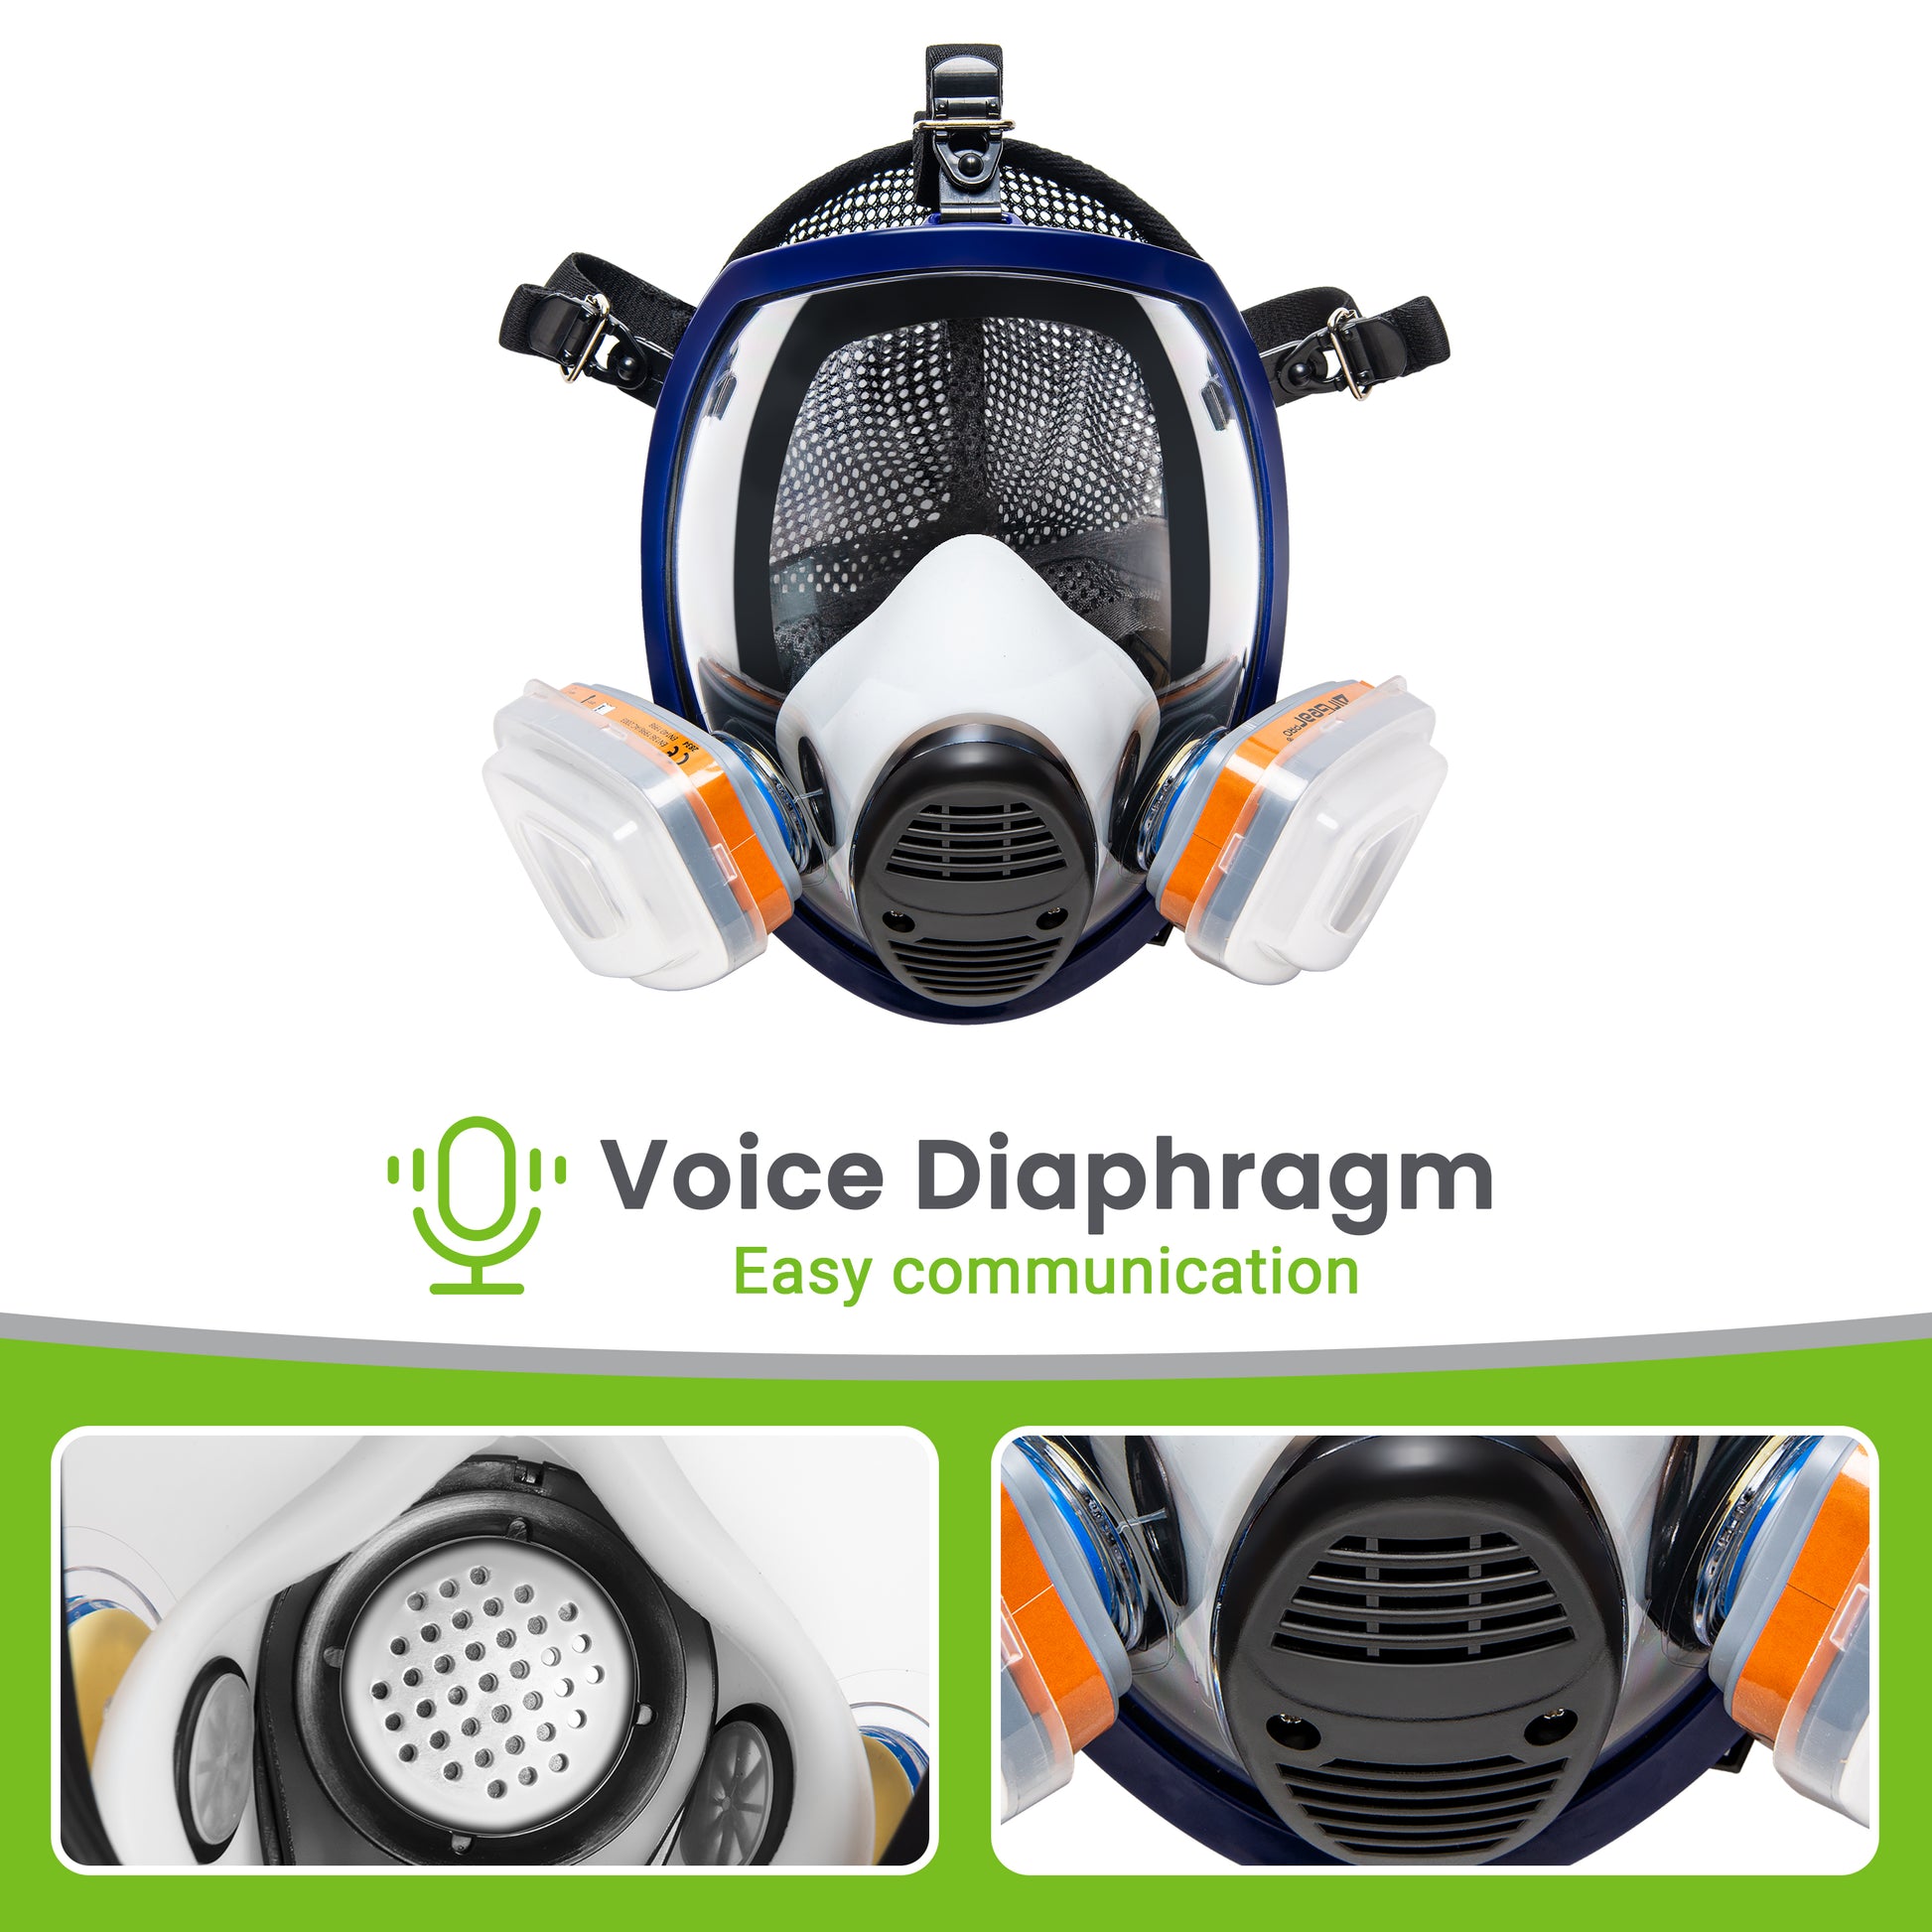 G-750 Masque de Protection Respiratoire Intégral avec Filtres A1P2